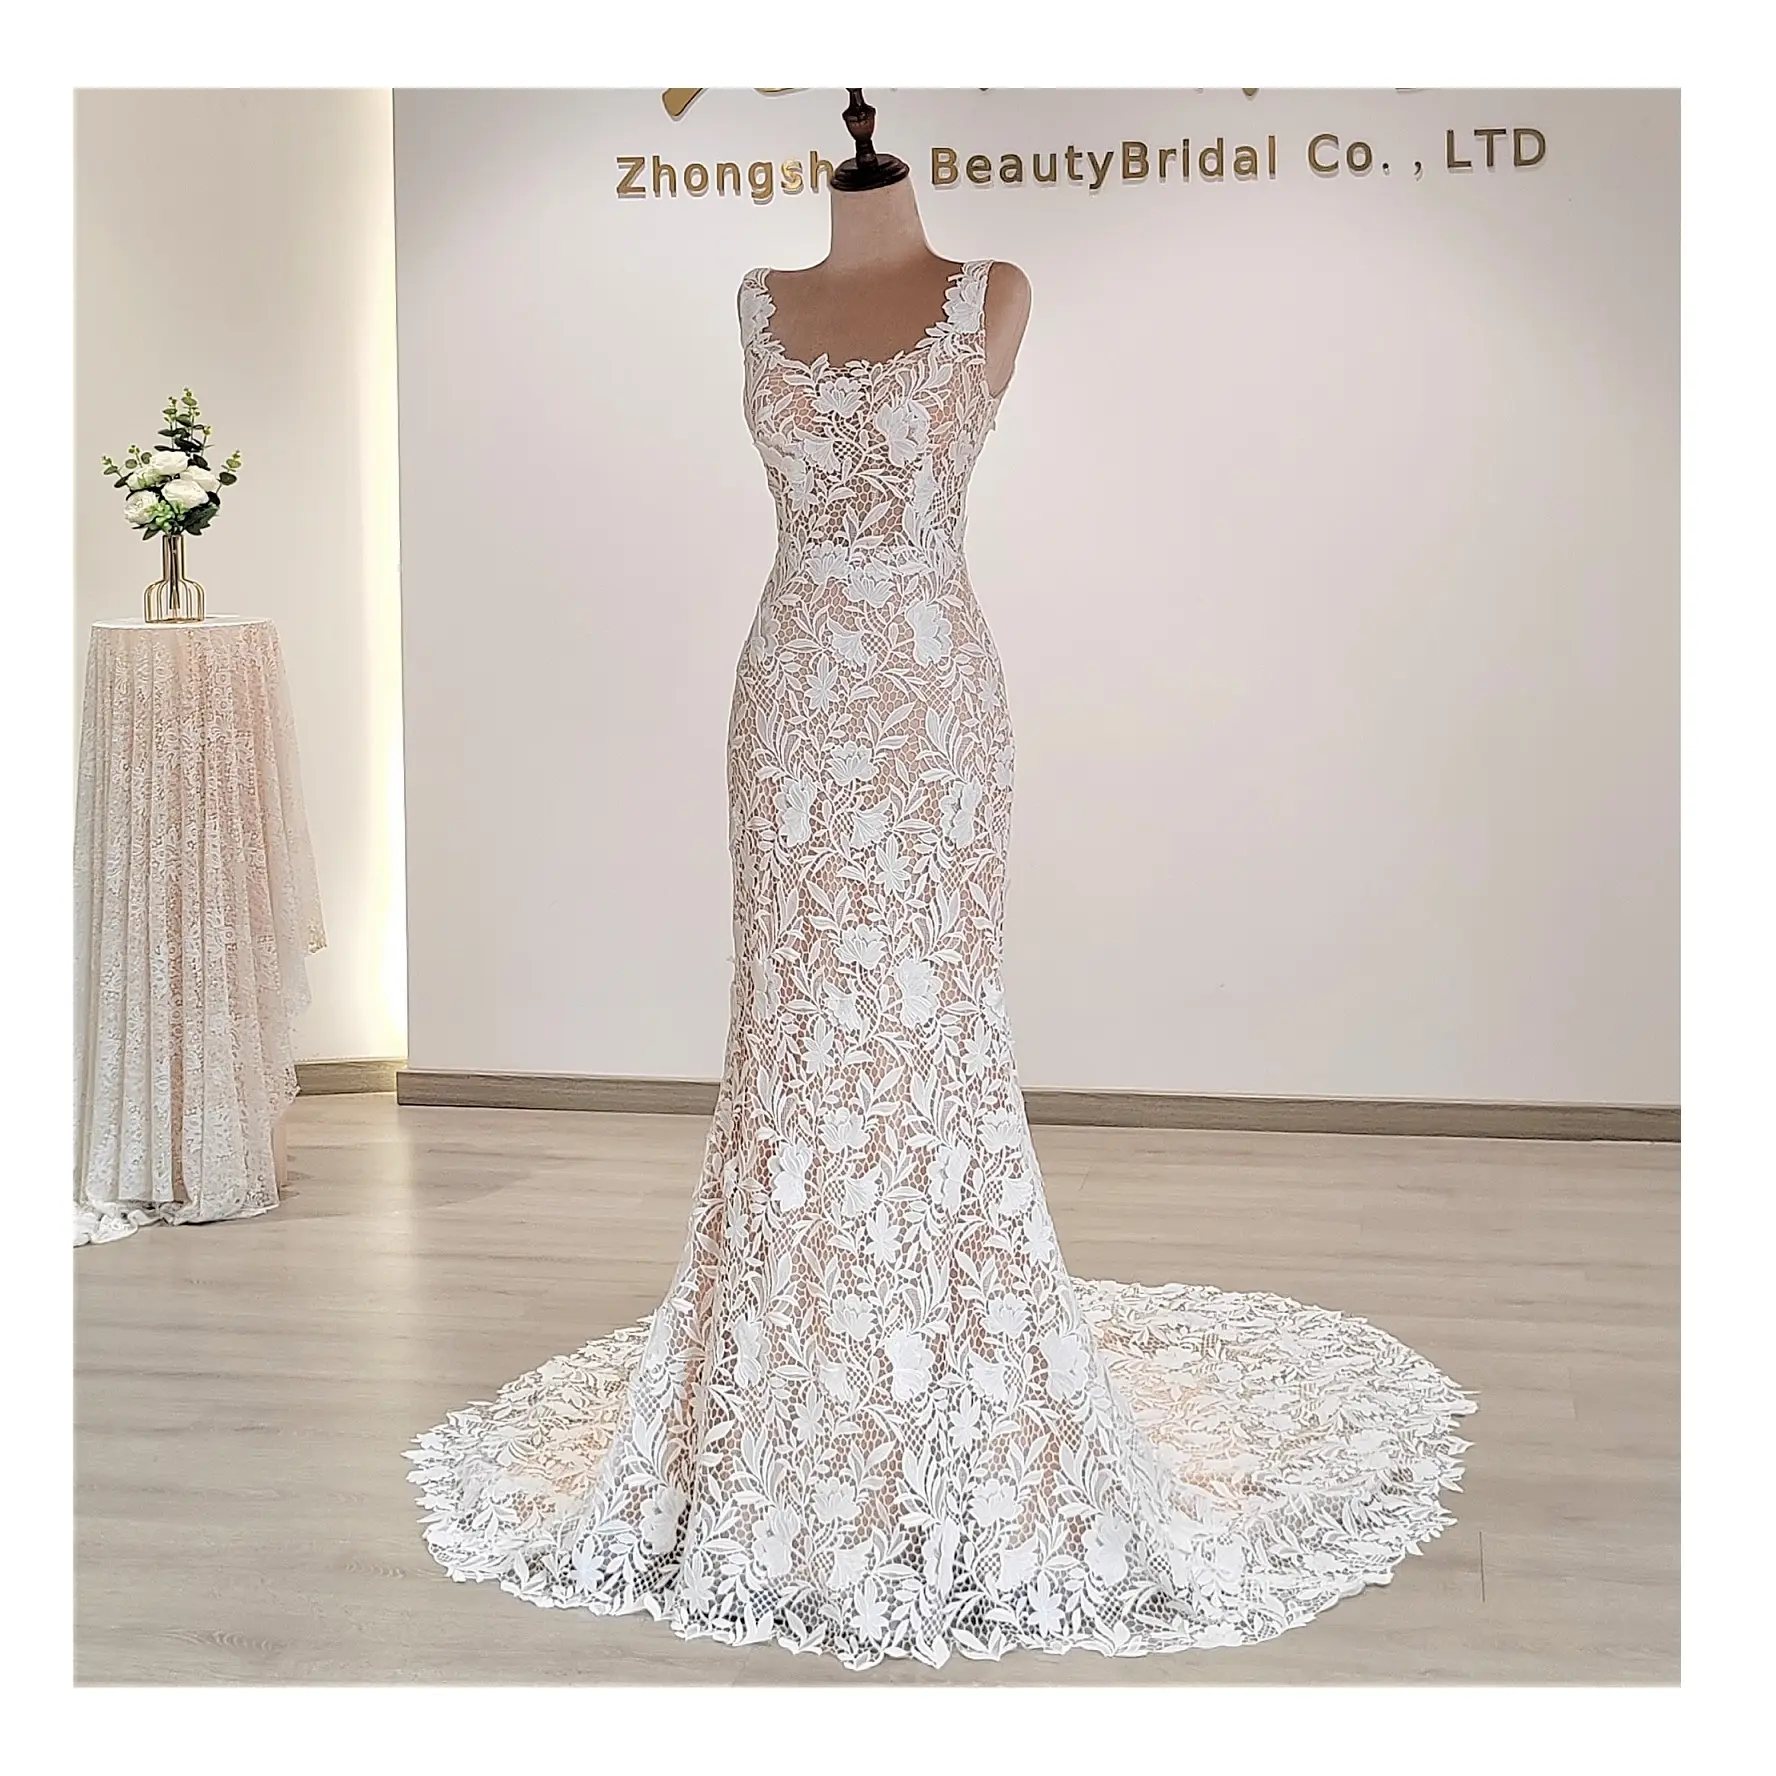 Novo estilo Hot vendas Wedding Gown Elegante Moda França Lace Sereia vestido Contraste Cor